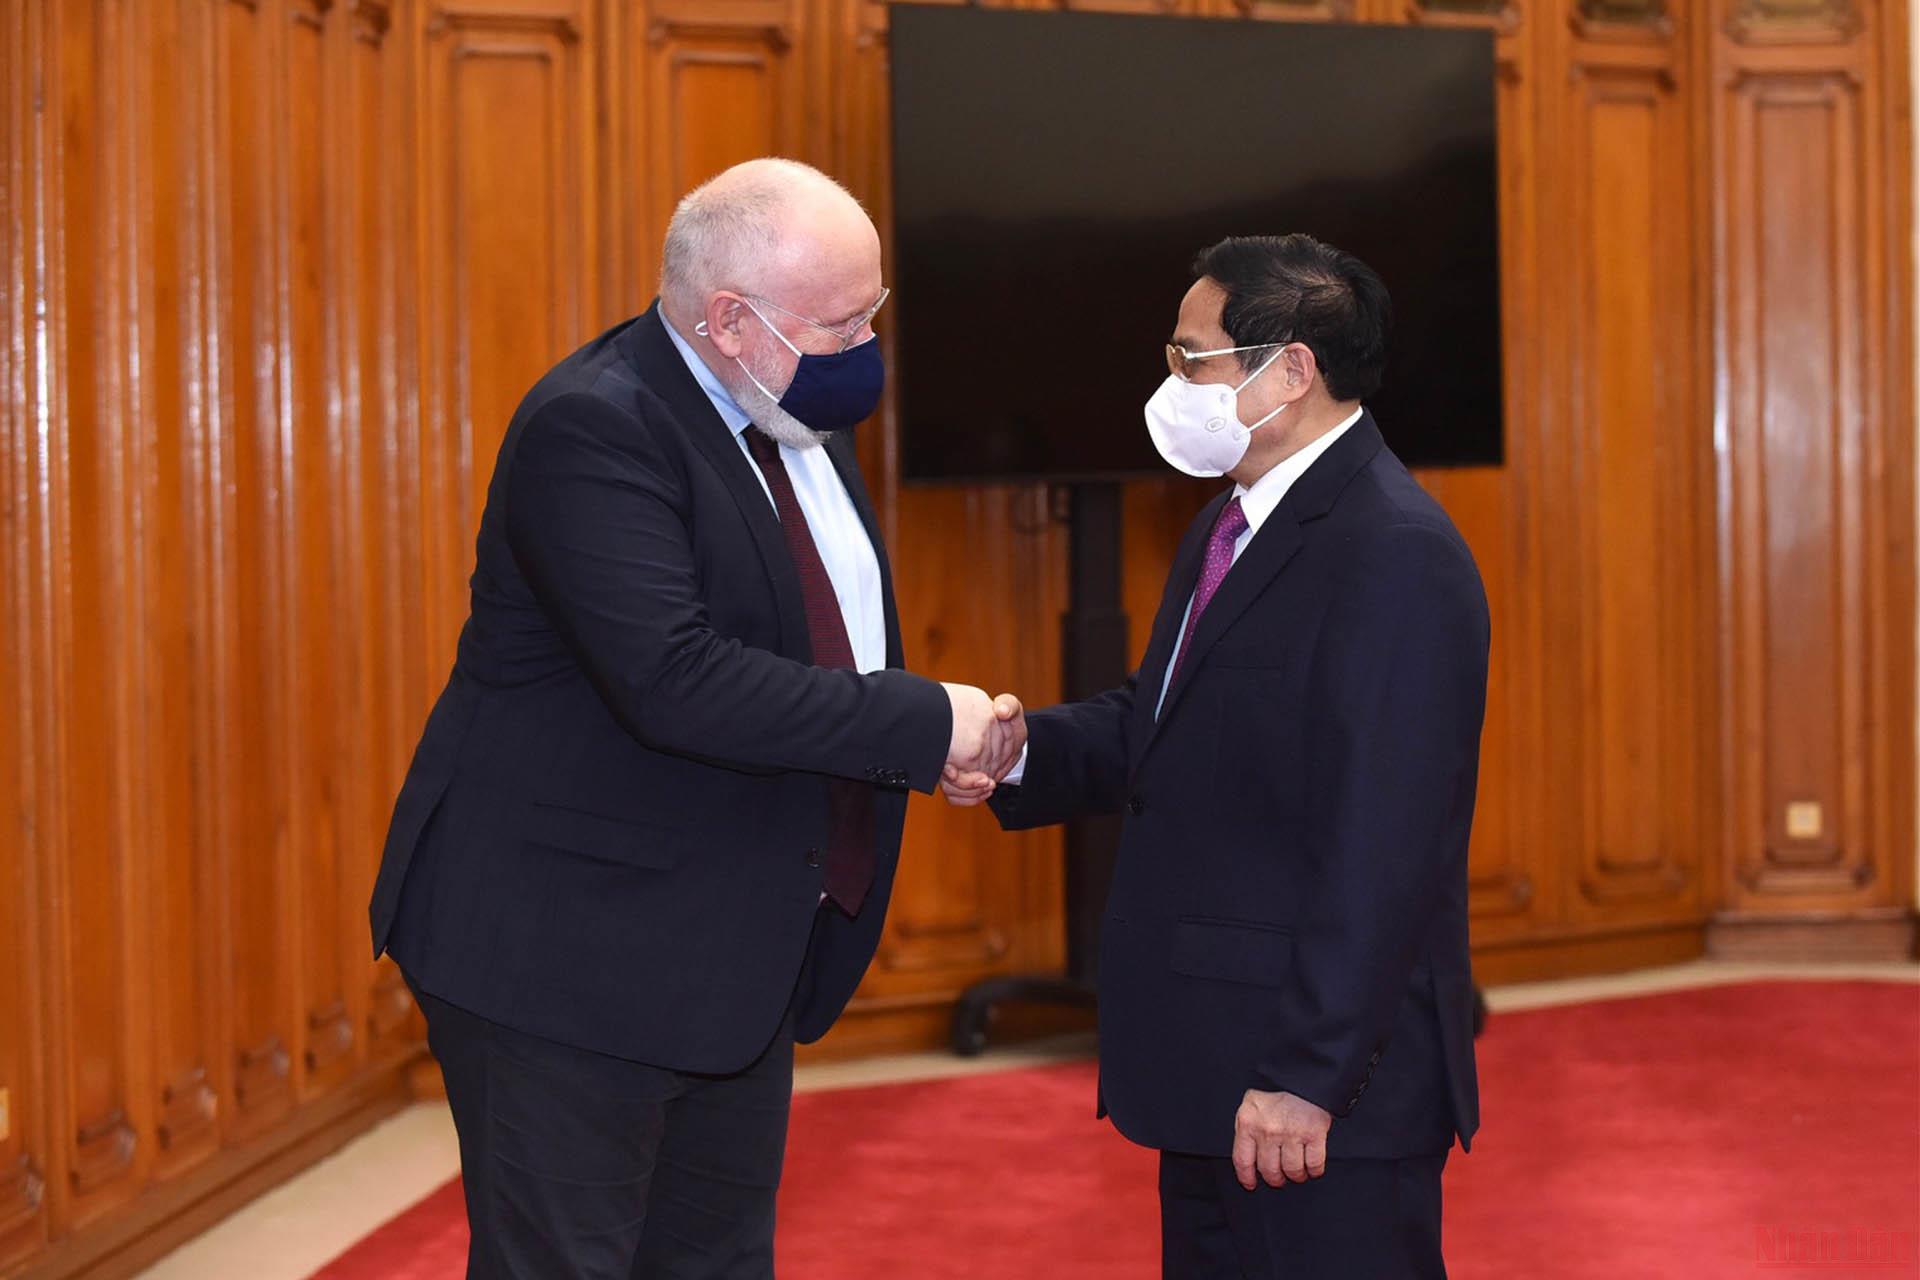  Ông Frans Timmermans gặp Thủ tướng Phạm Minh Chính. (Ảnh: TRẦN HẢI)